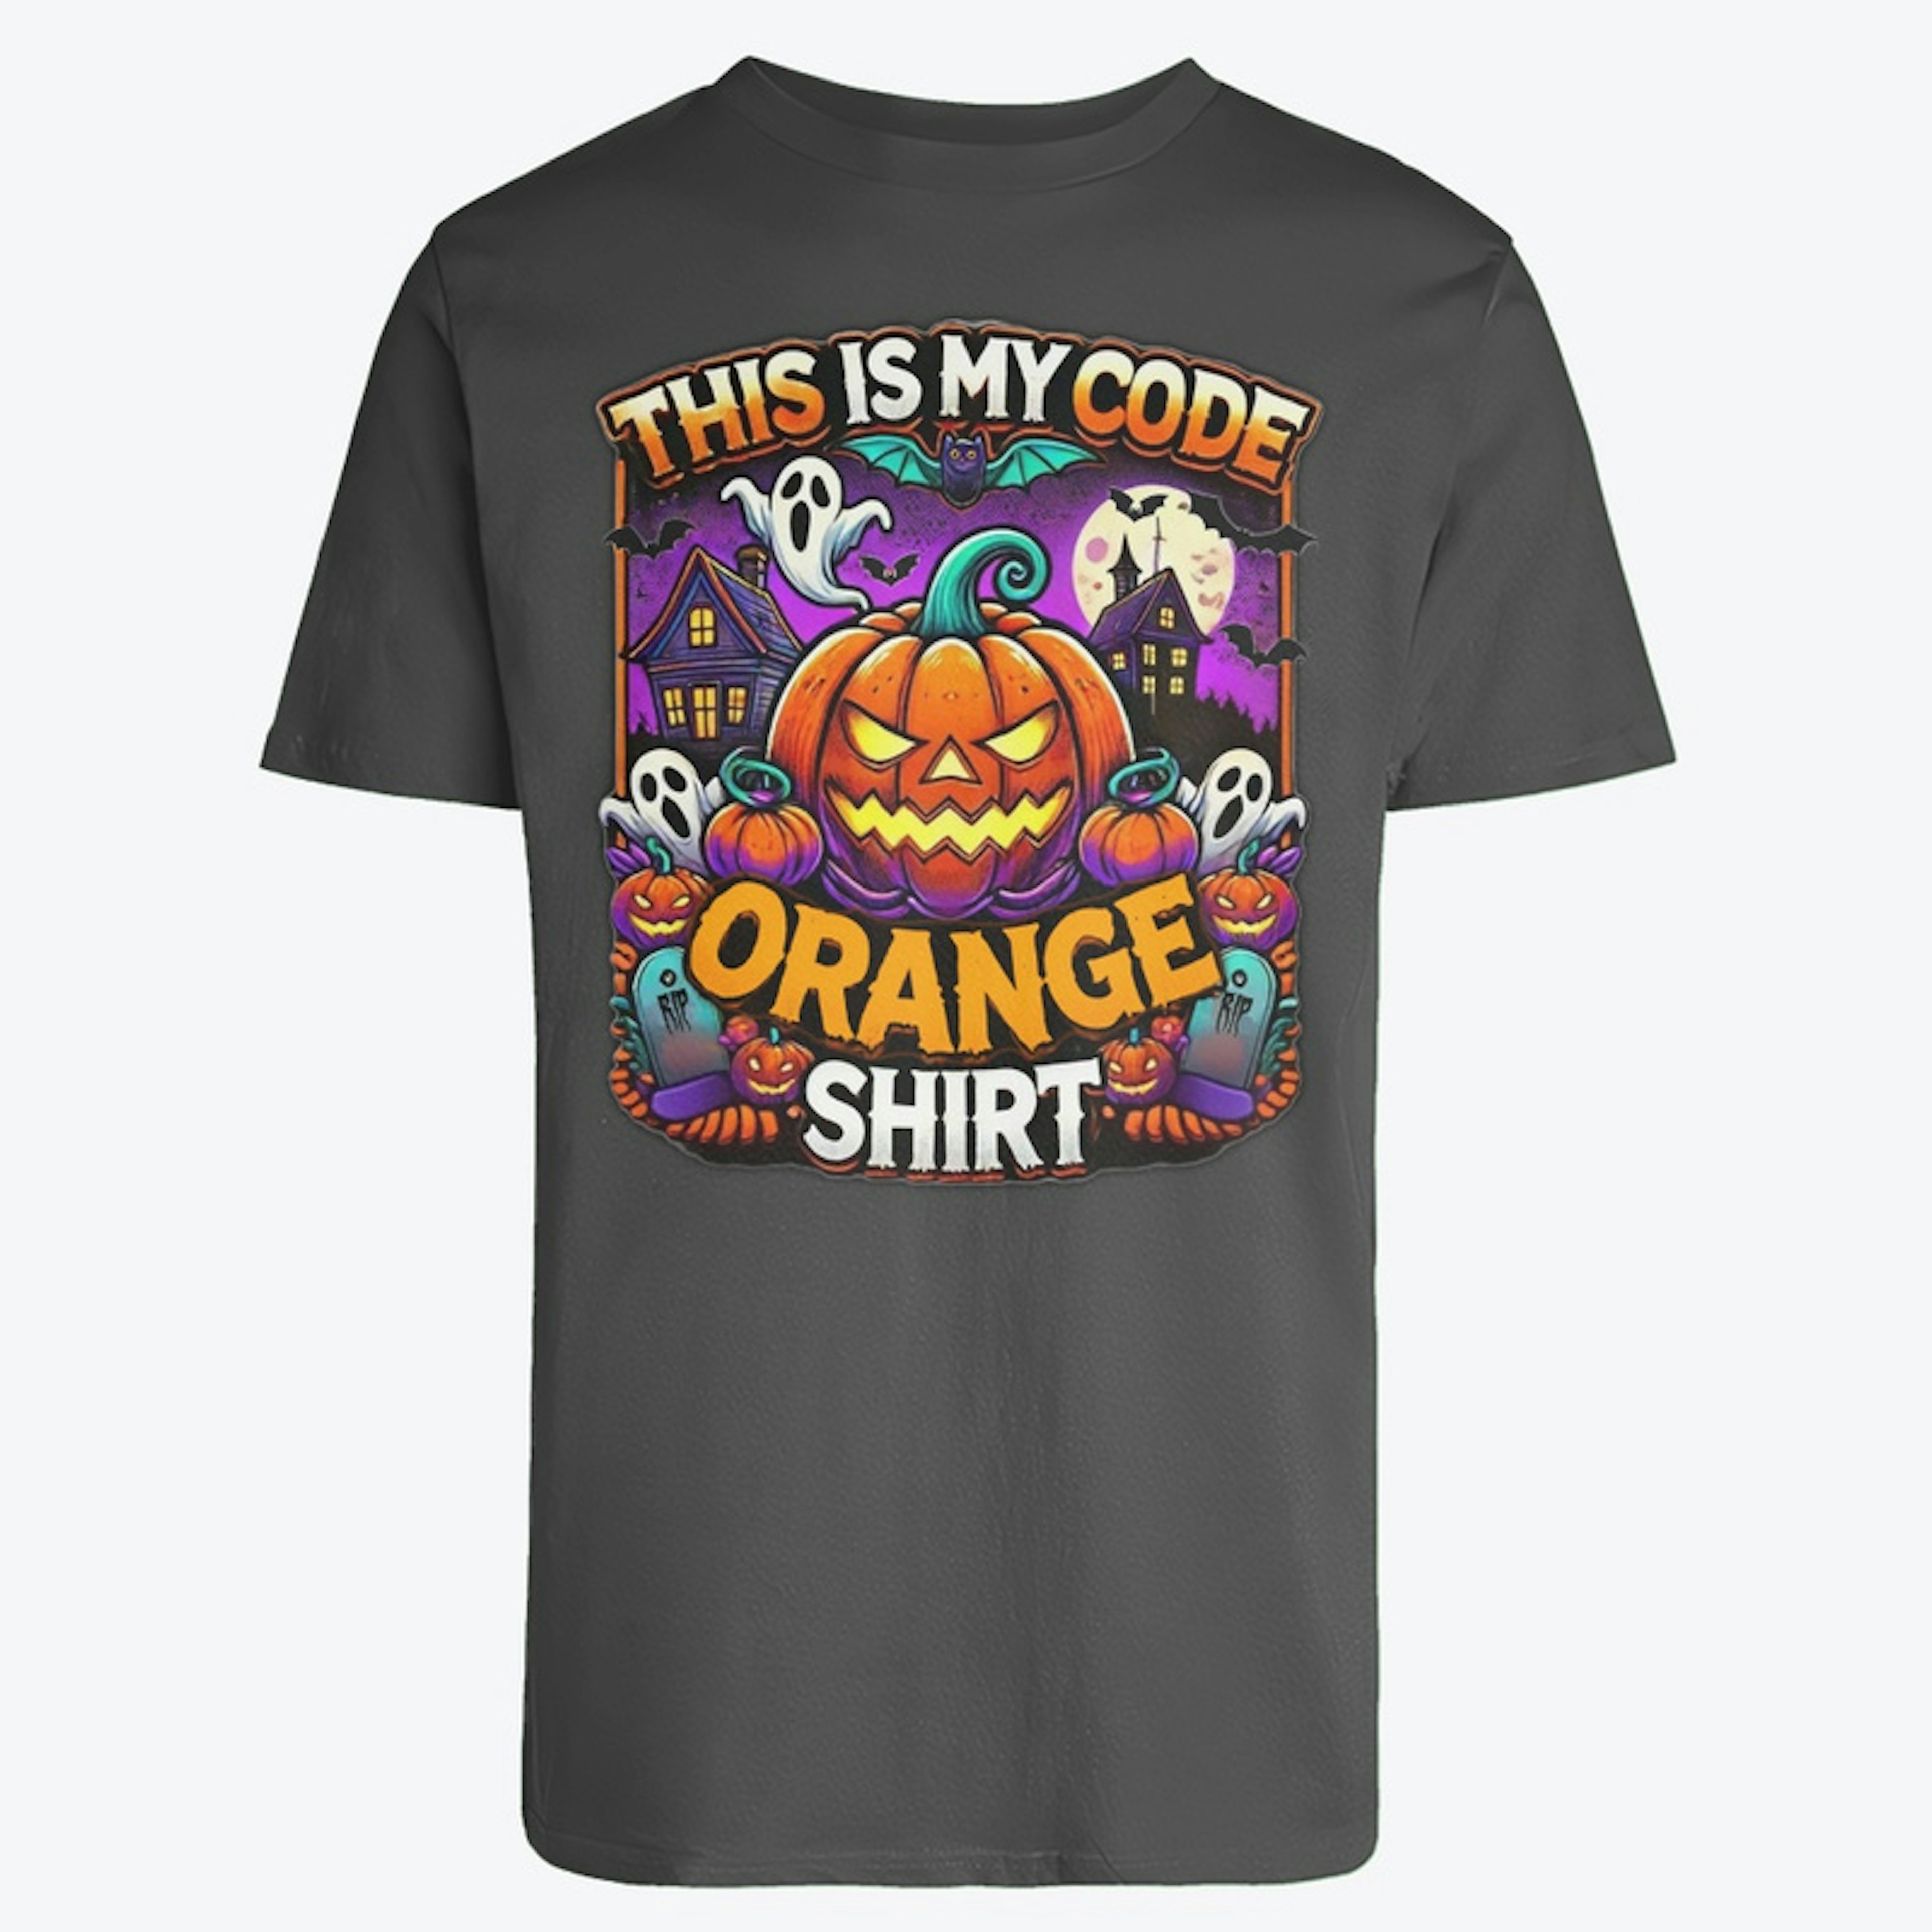 It's Code Orange Time!